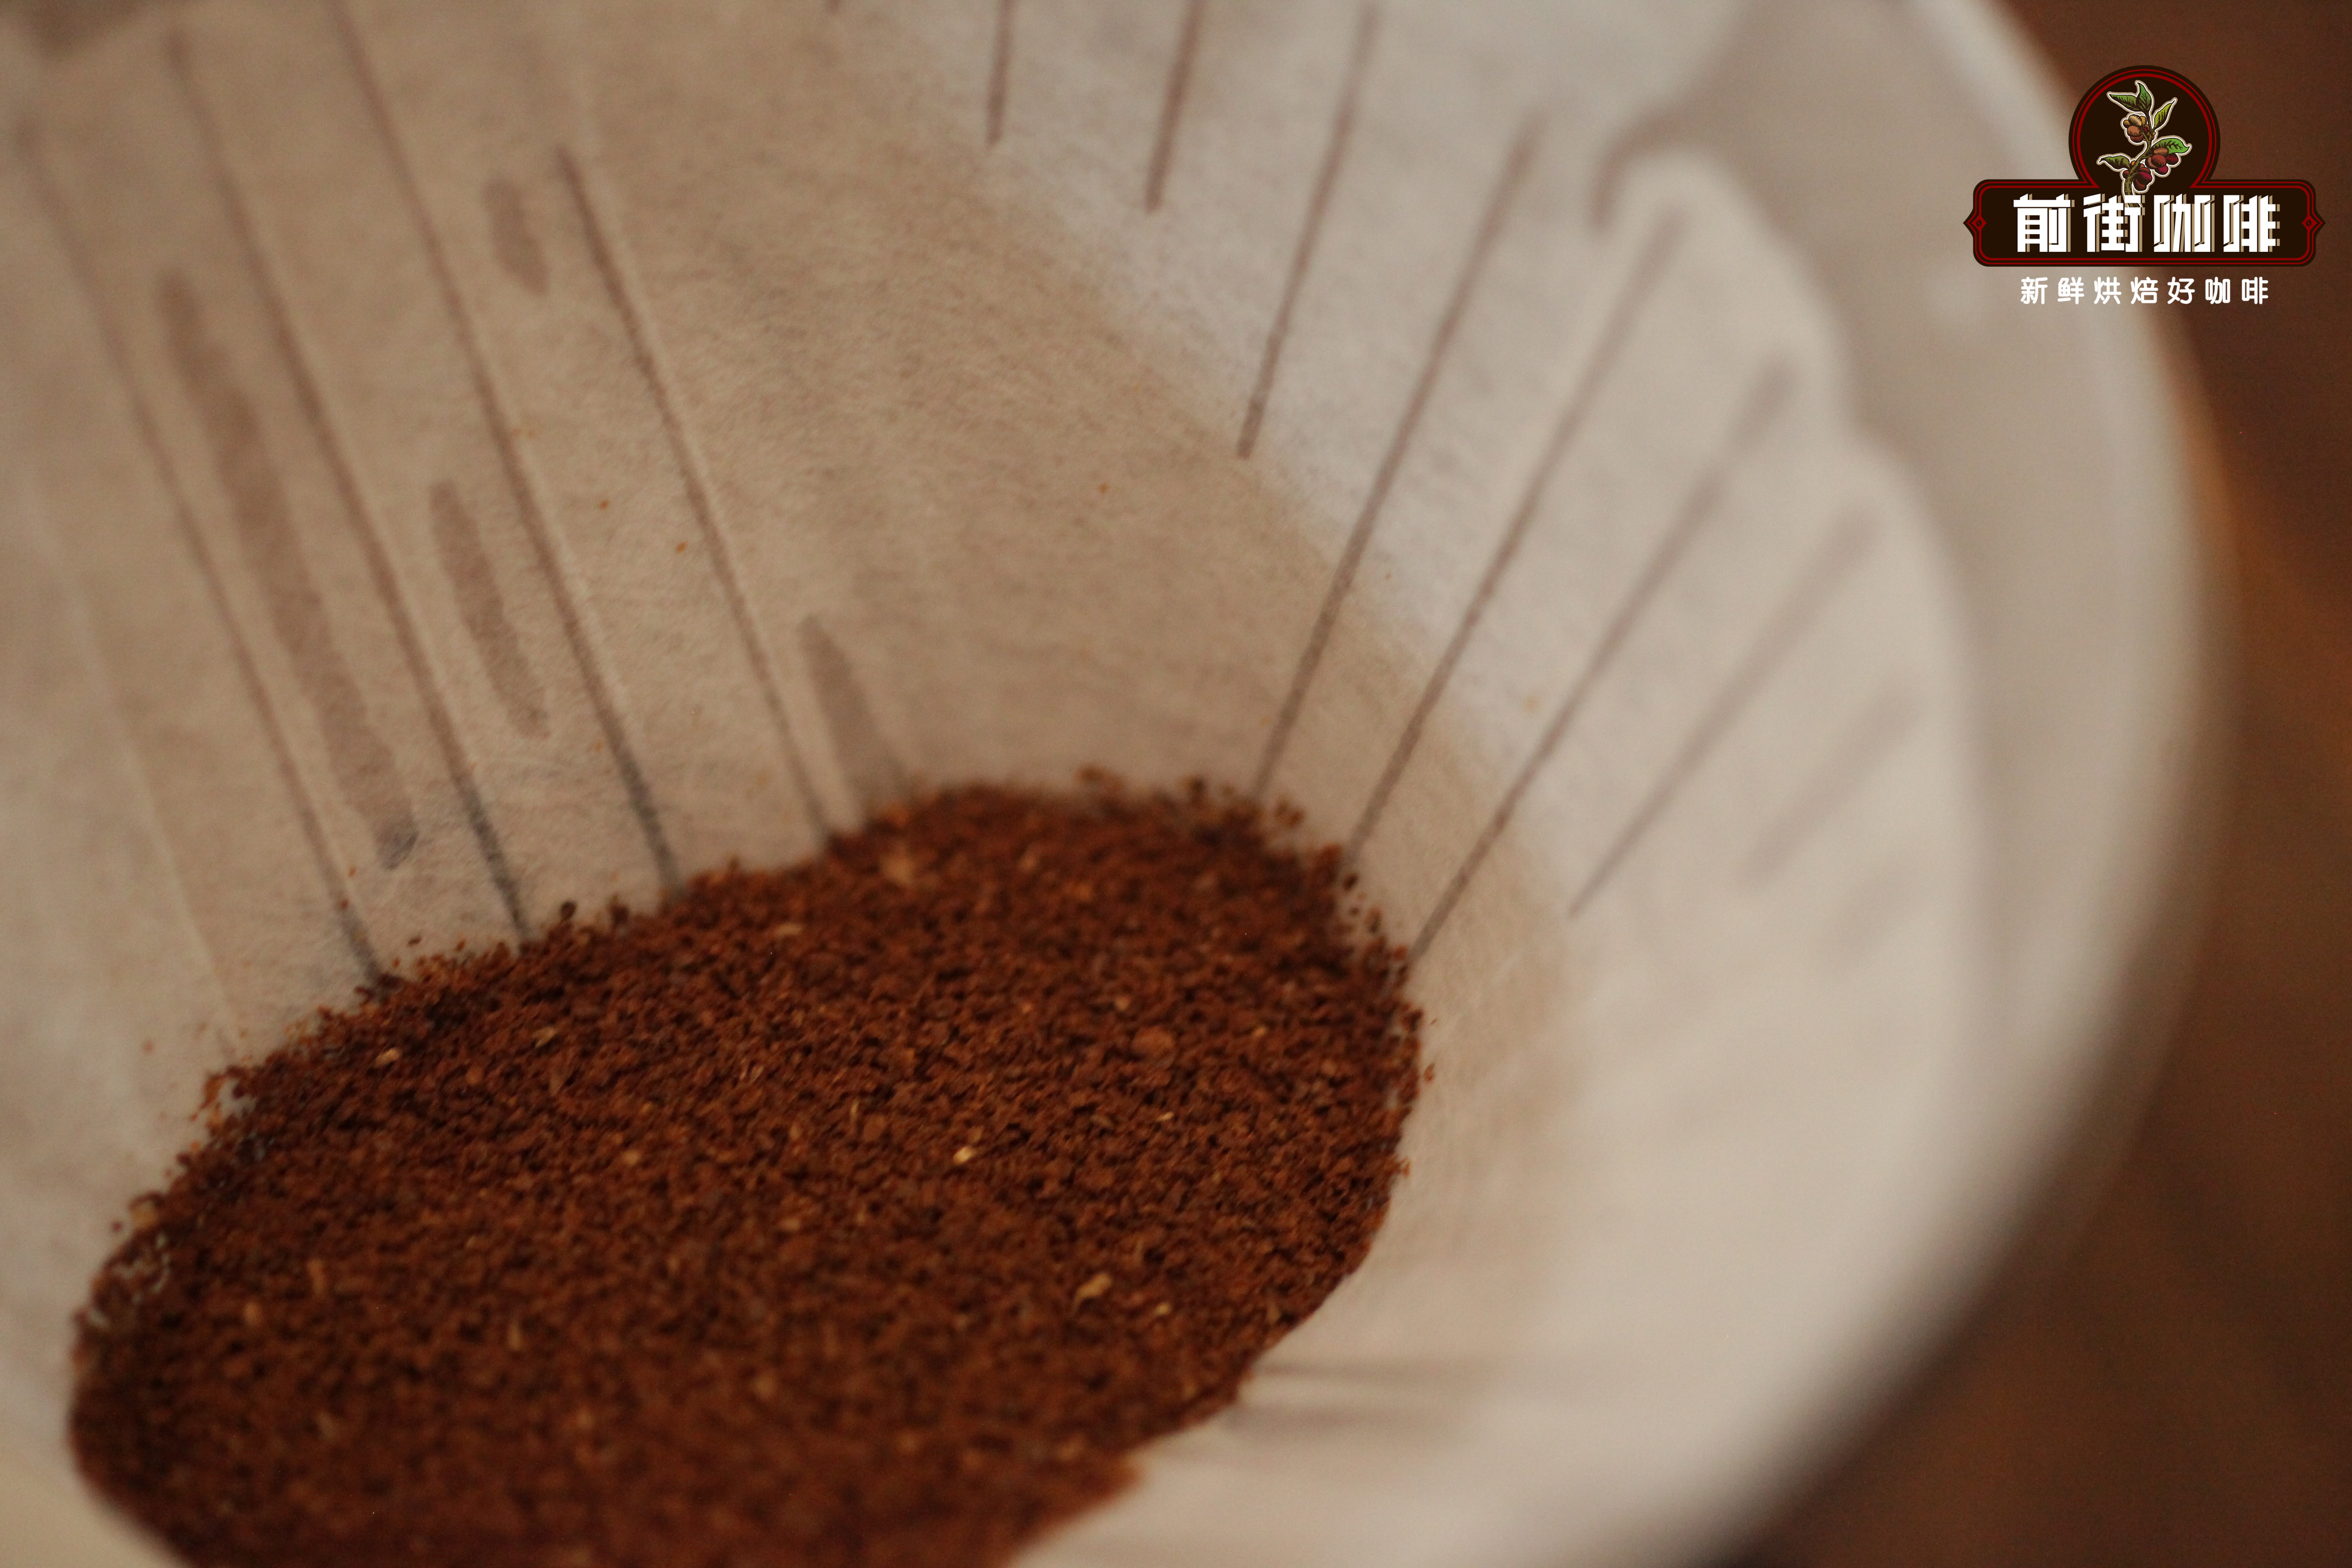  手衝咖啡要篩細粉嗎 手衝咖啡細粉對咖啡萃取和風味的影響